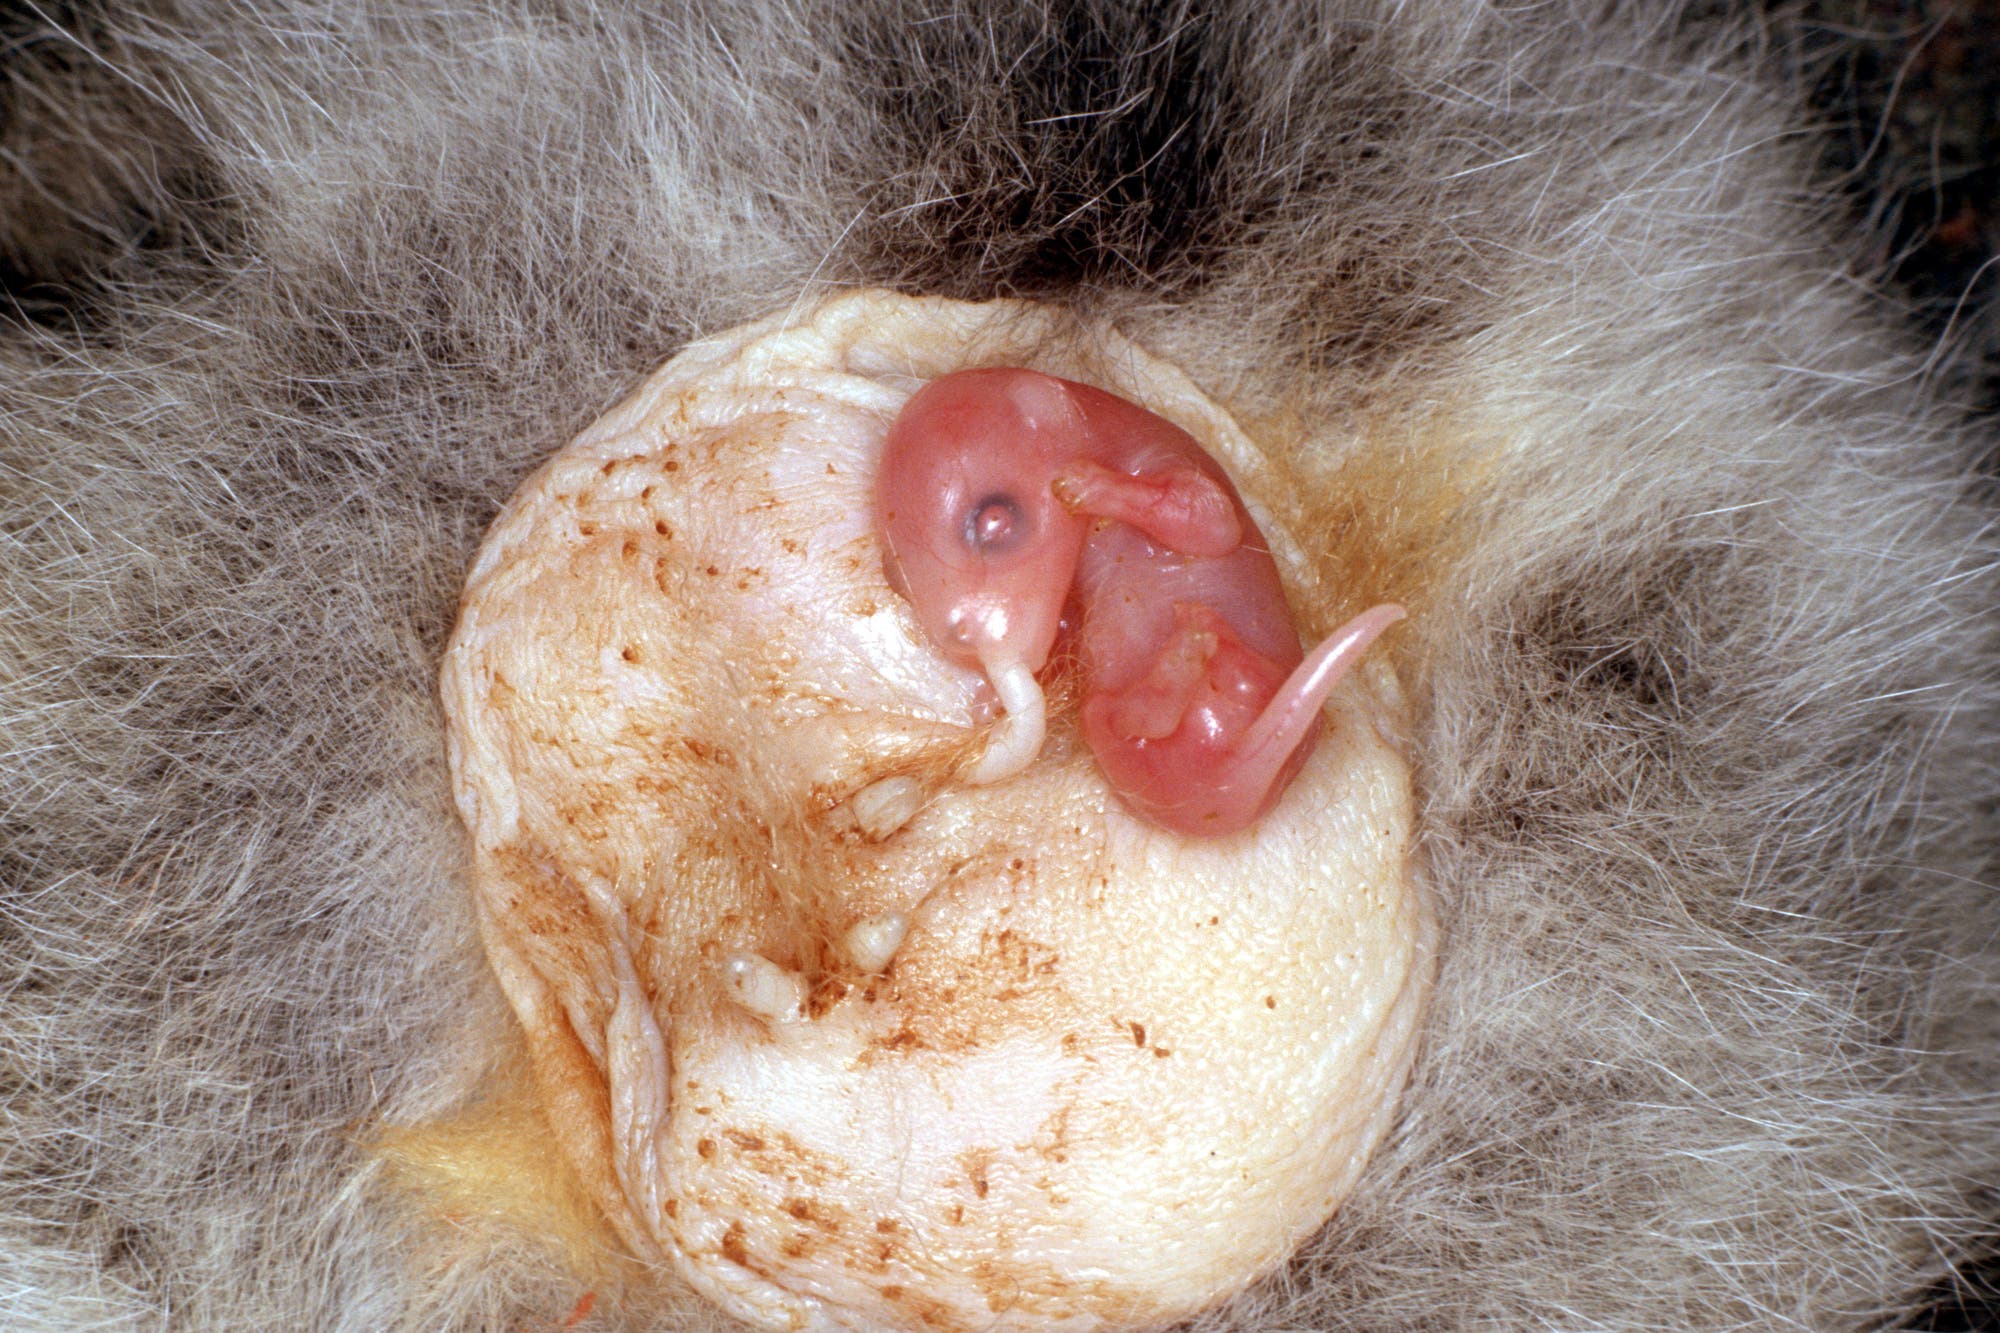 Wallaby-Neugeborenes in seinem mobilen Nest